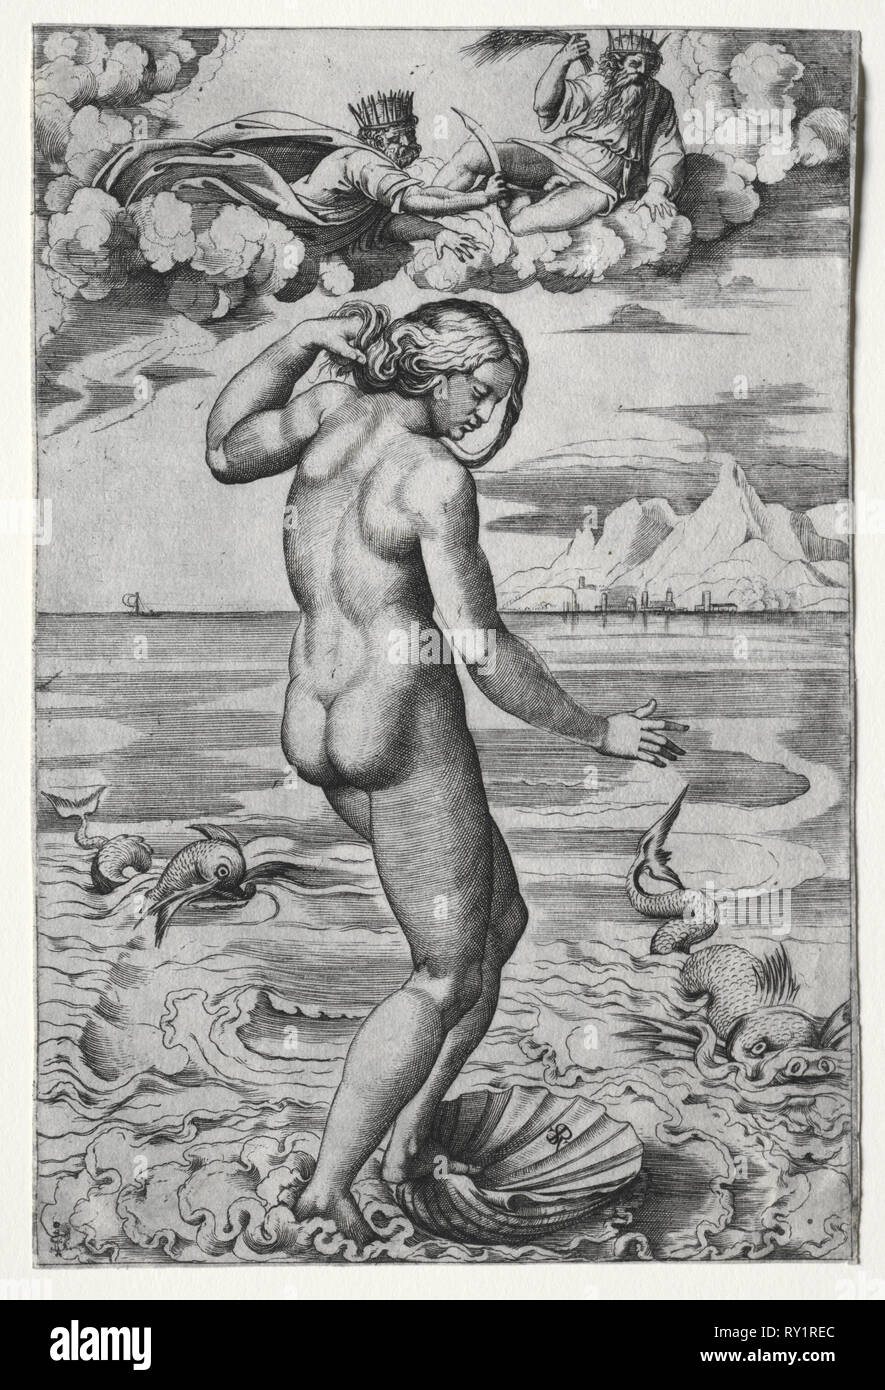 La Nascita di Venere, c. 1516. Marco Dente (Italiano, c. 1486-1527), dopo Raphael (Italiano, 1483-1520). Incisione Foto Stock